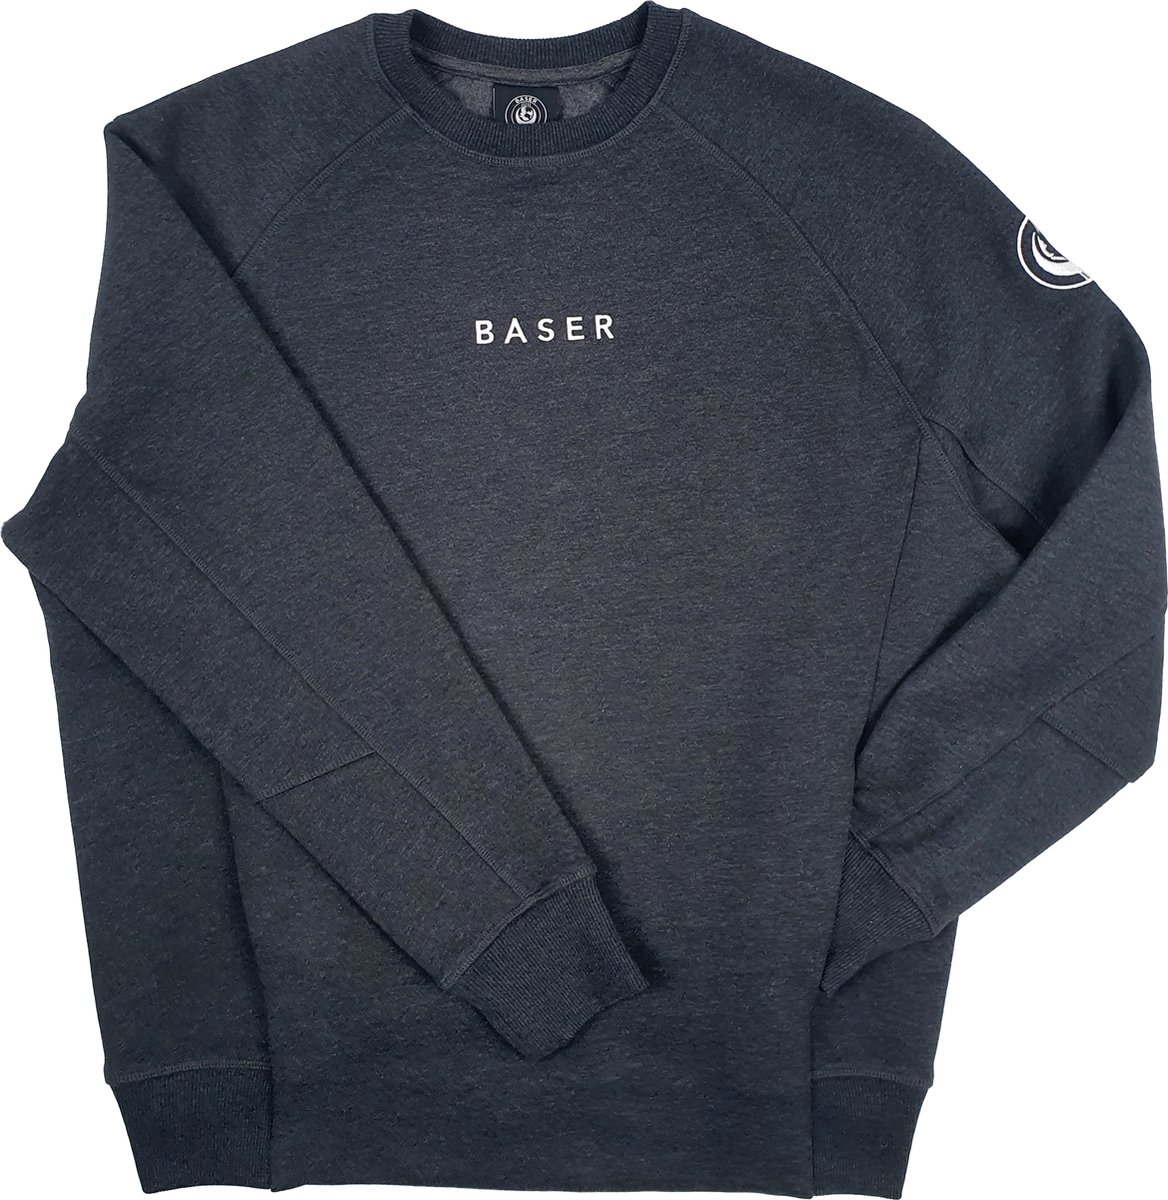 BASER Statement Sweater Grijs Melange Fleece - Maat S